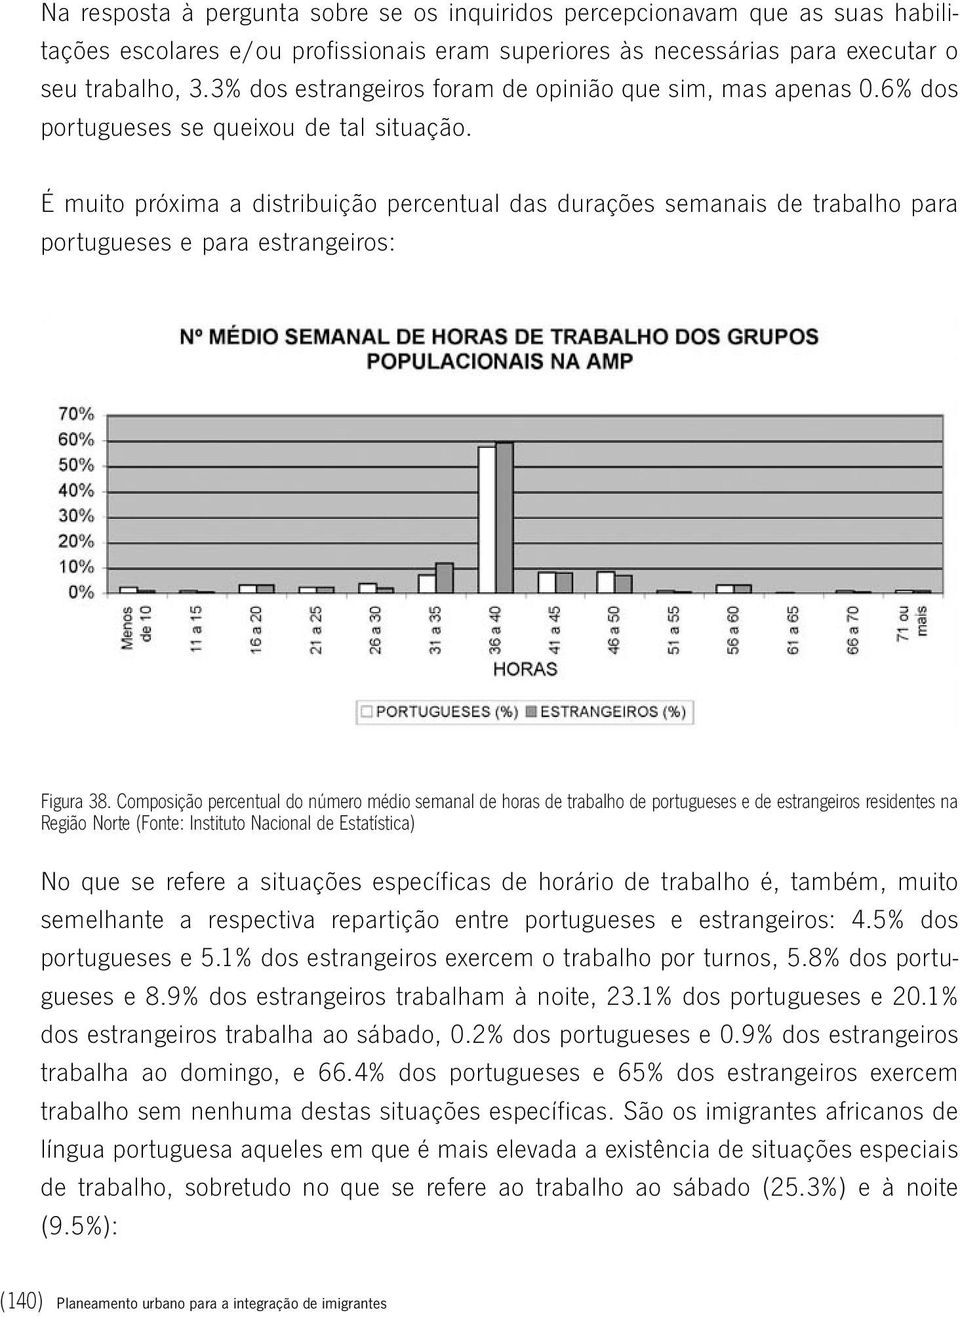 É muito próxima a distribuição percentual das durações semanais de trabalho para portugueses e para estrangeiros: Figura 38.